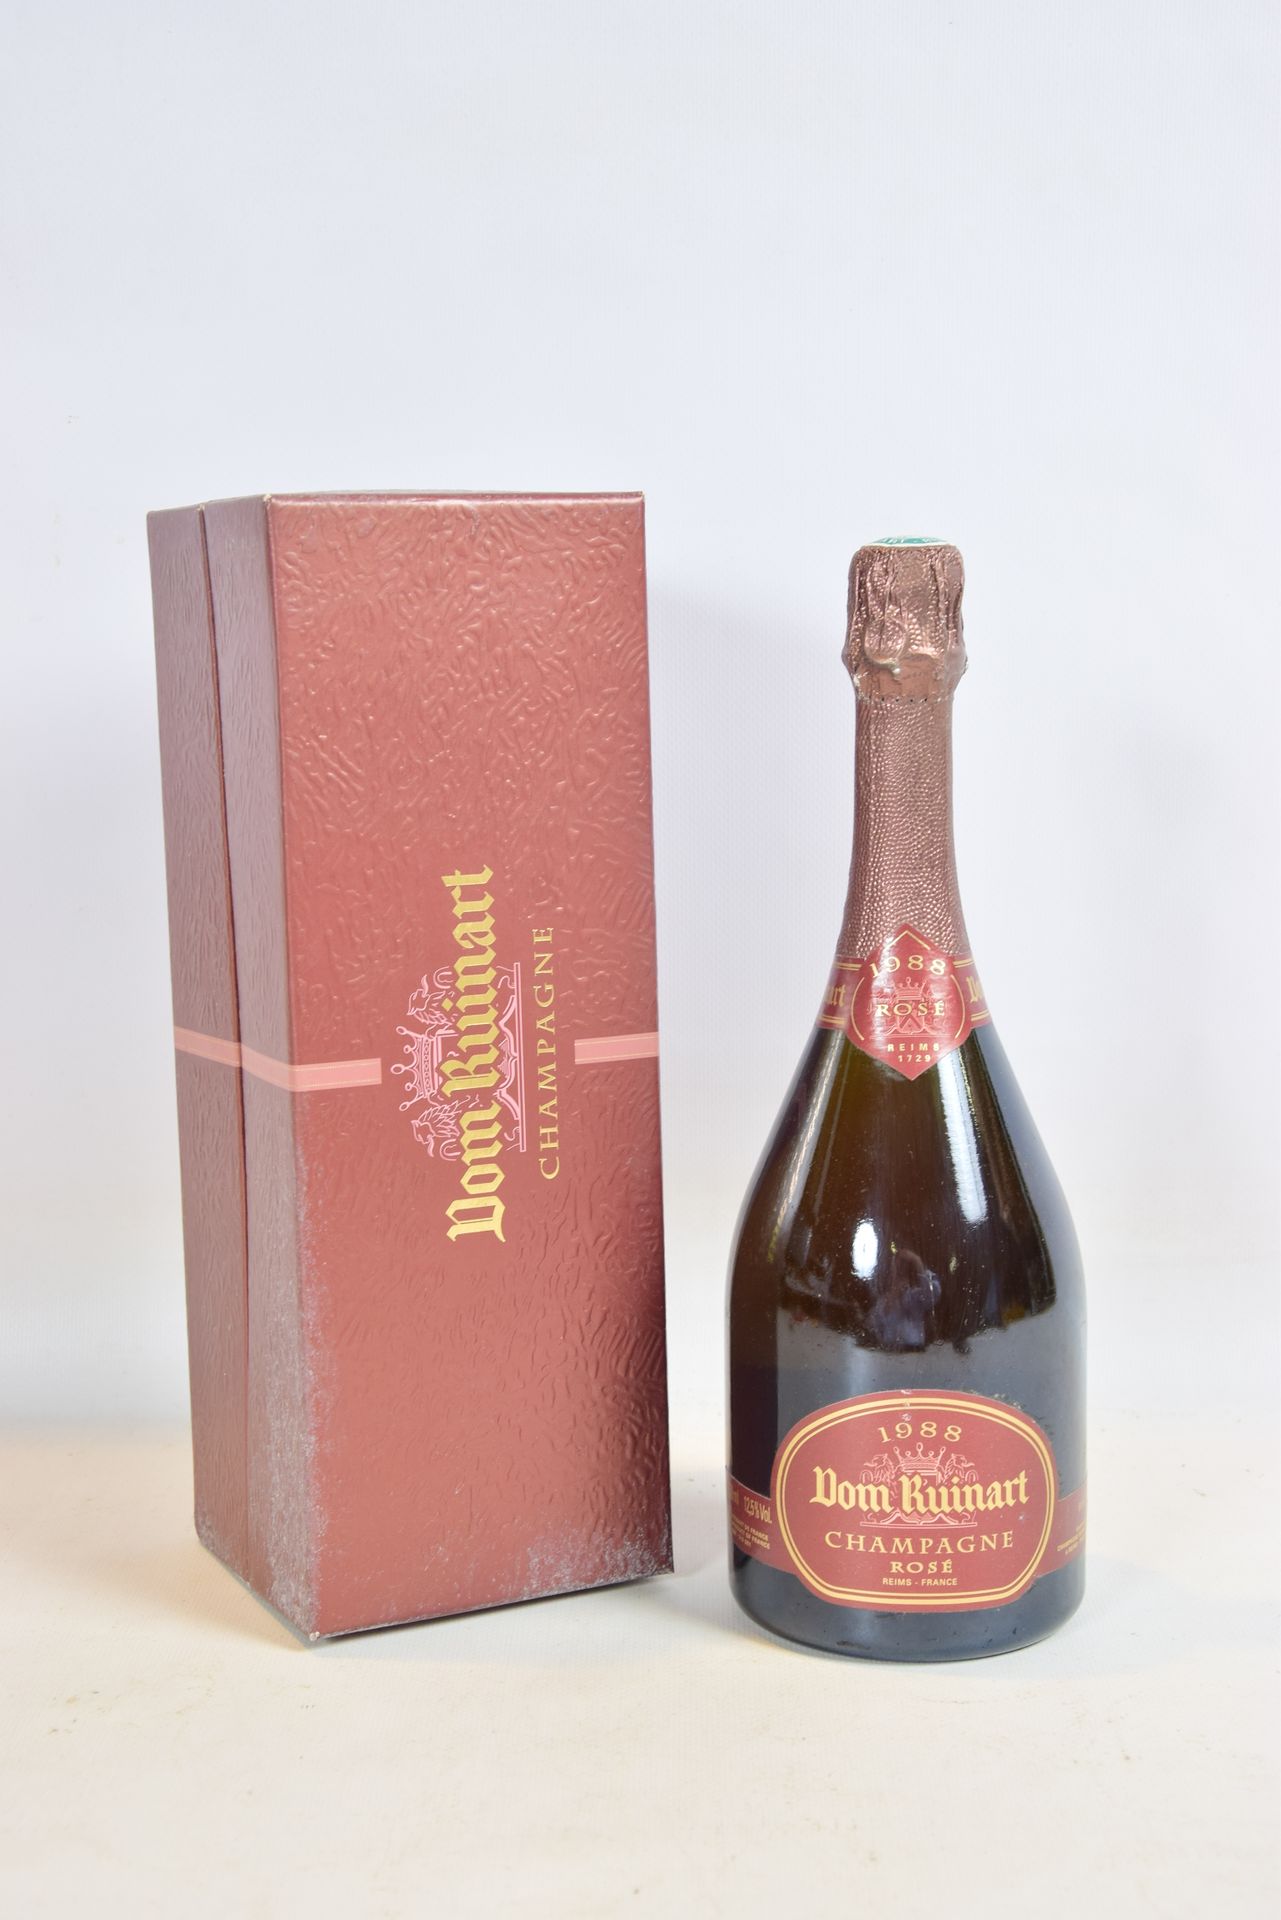 Null 1 Blle	Champagne DOM RUINART Rosé		1988

	Présentation et niveau, impeccabl&hellip;